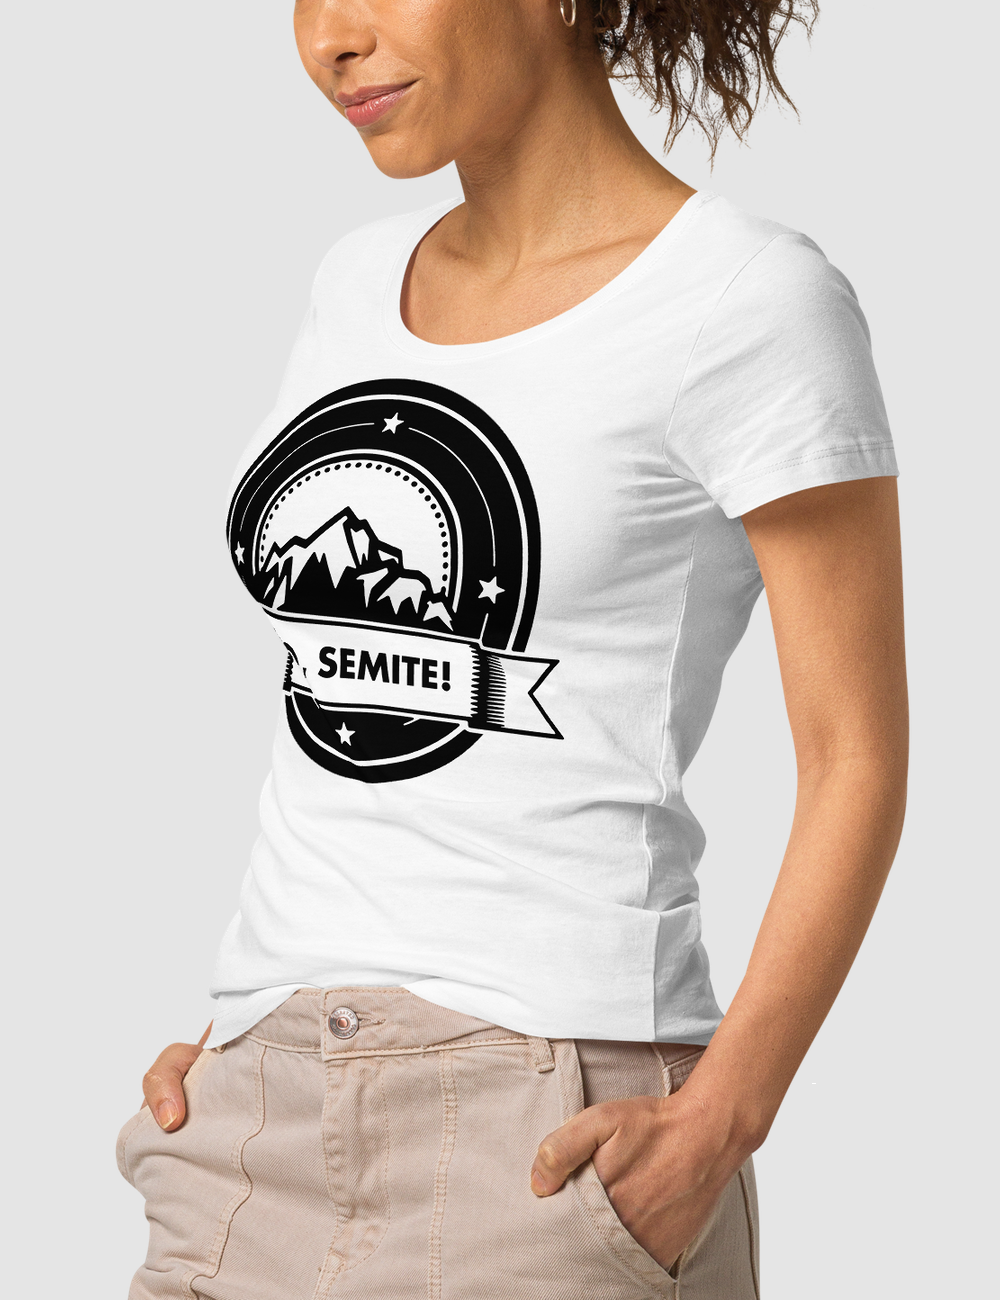 Yo Semite | Women's Organic Round Neck T-Shirt OniTakai